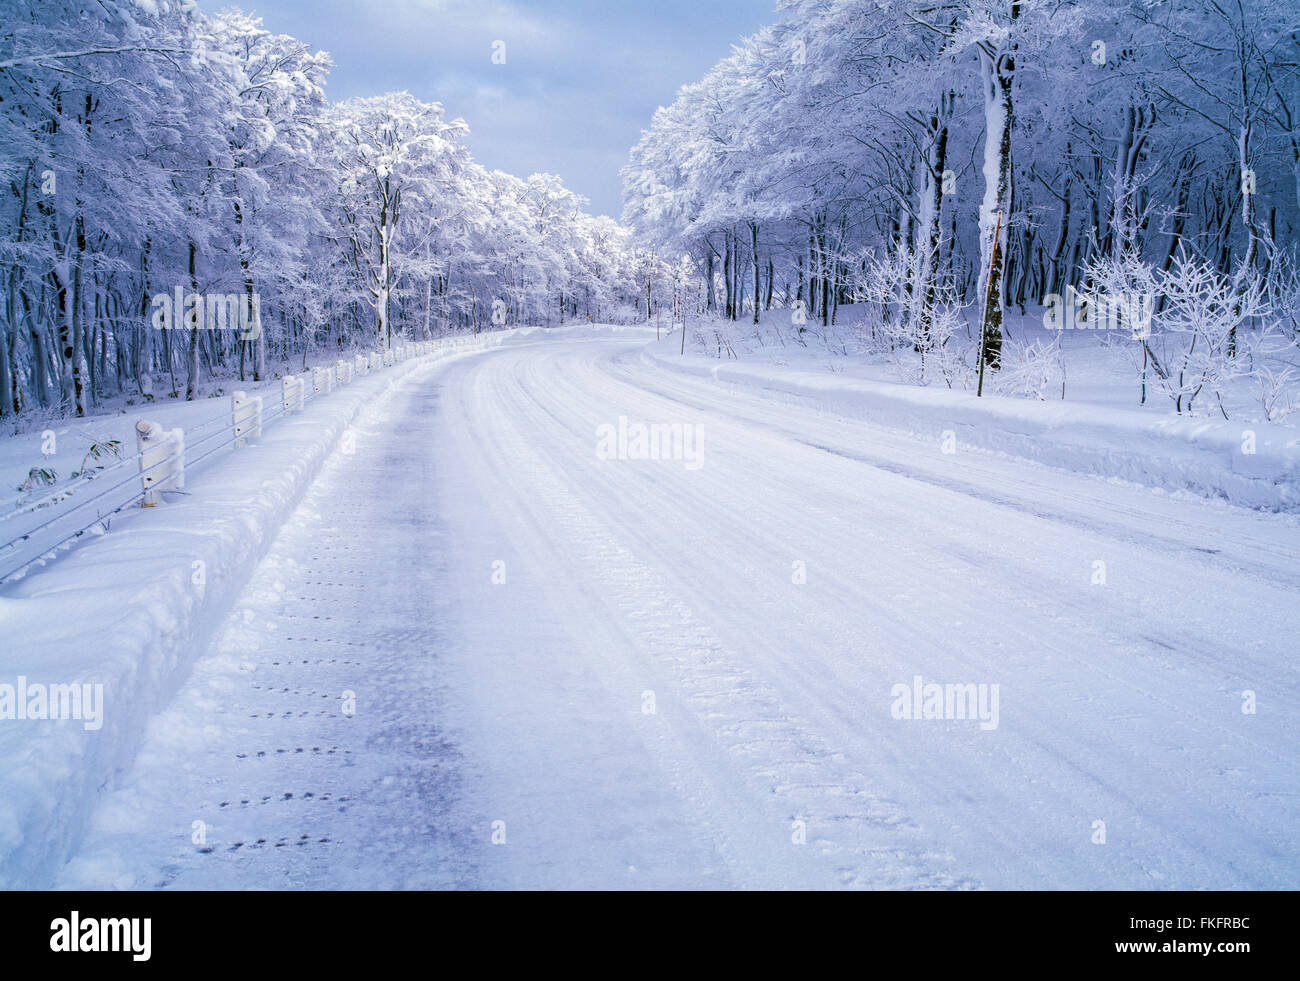 Une route de neige (394) à travers la forêt en hiver. Image prise près de montagnes Hakkouda à Aomori, dans le Nord, Japon Banque D'Images